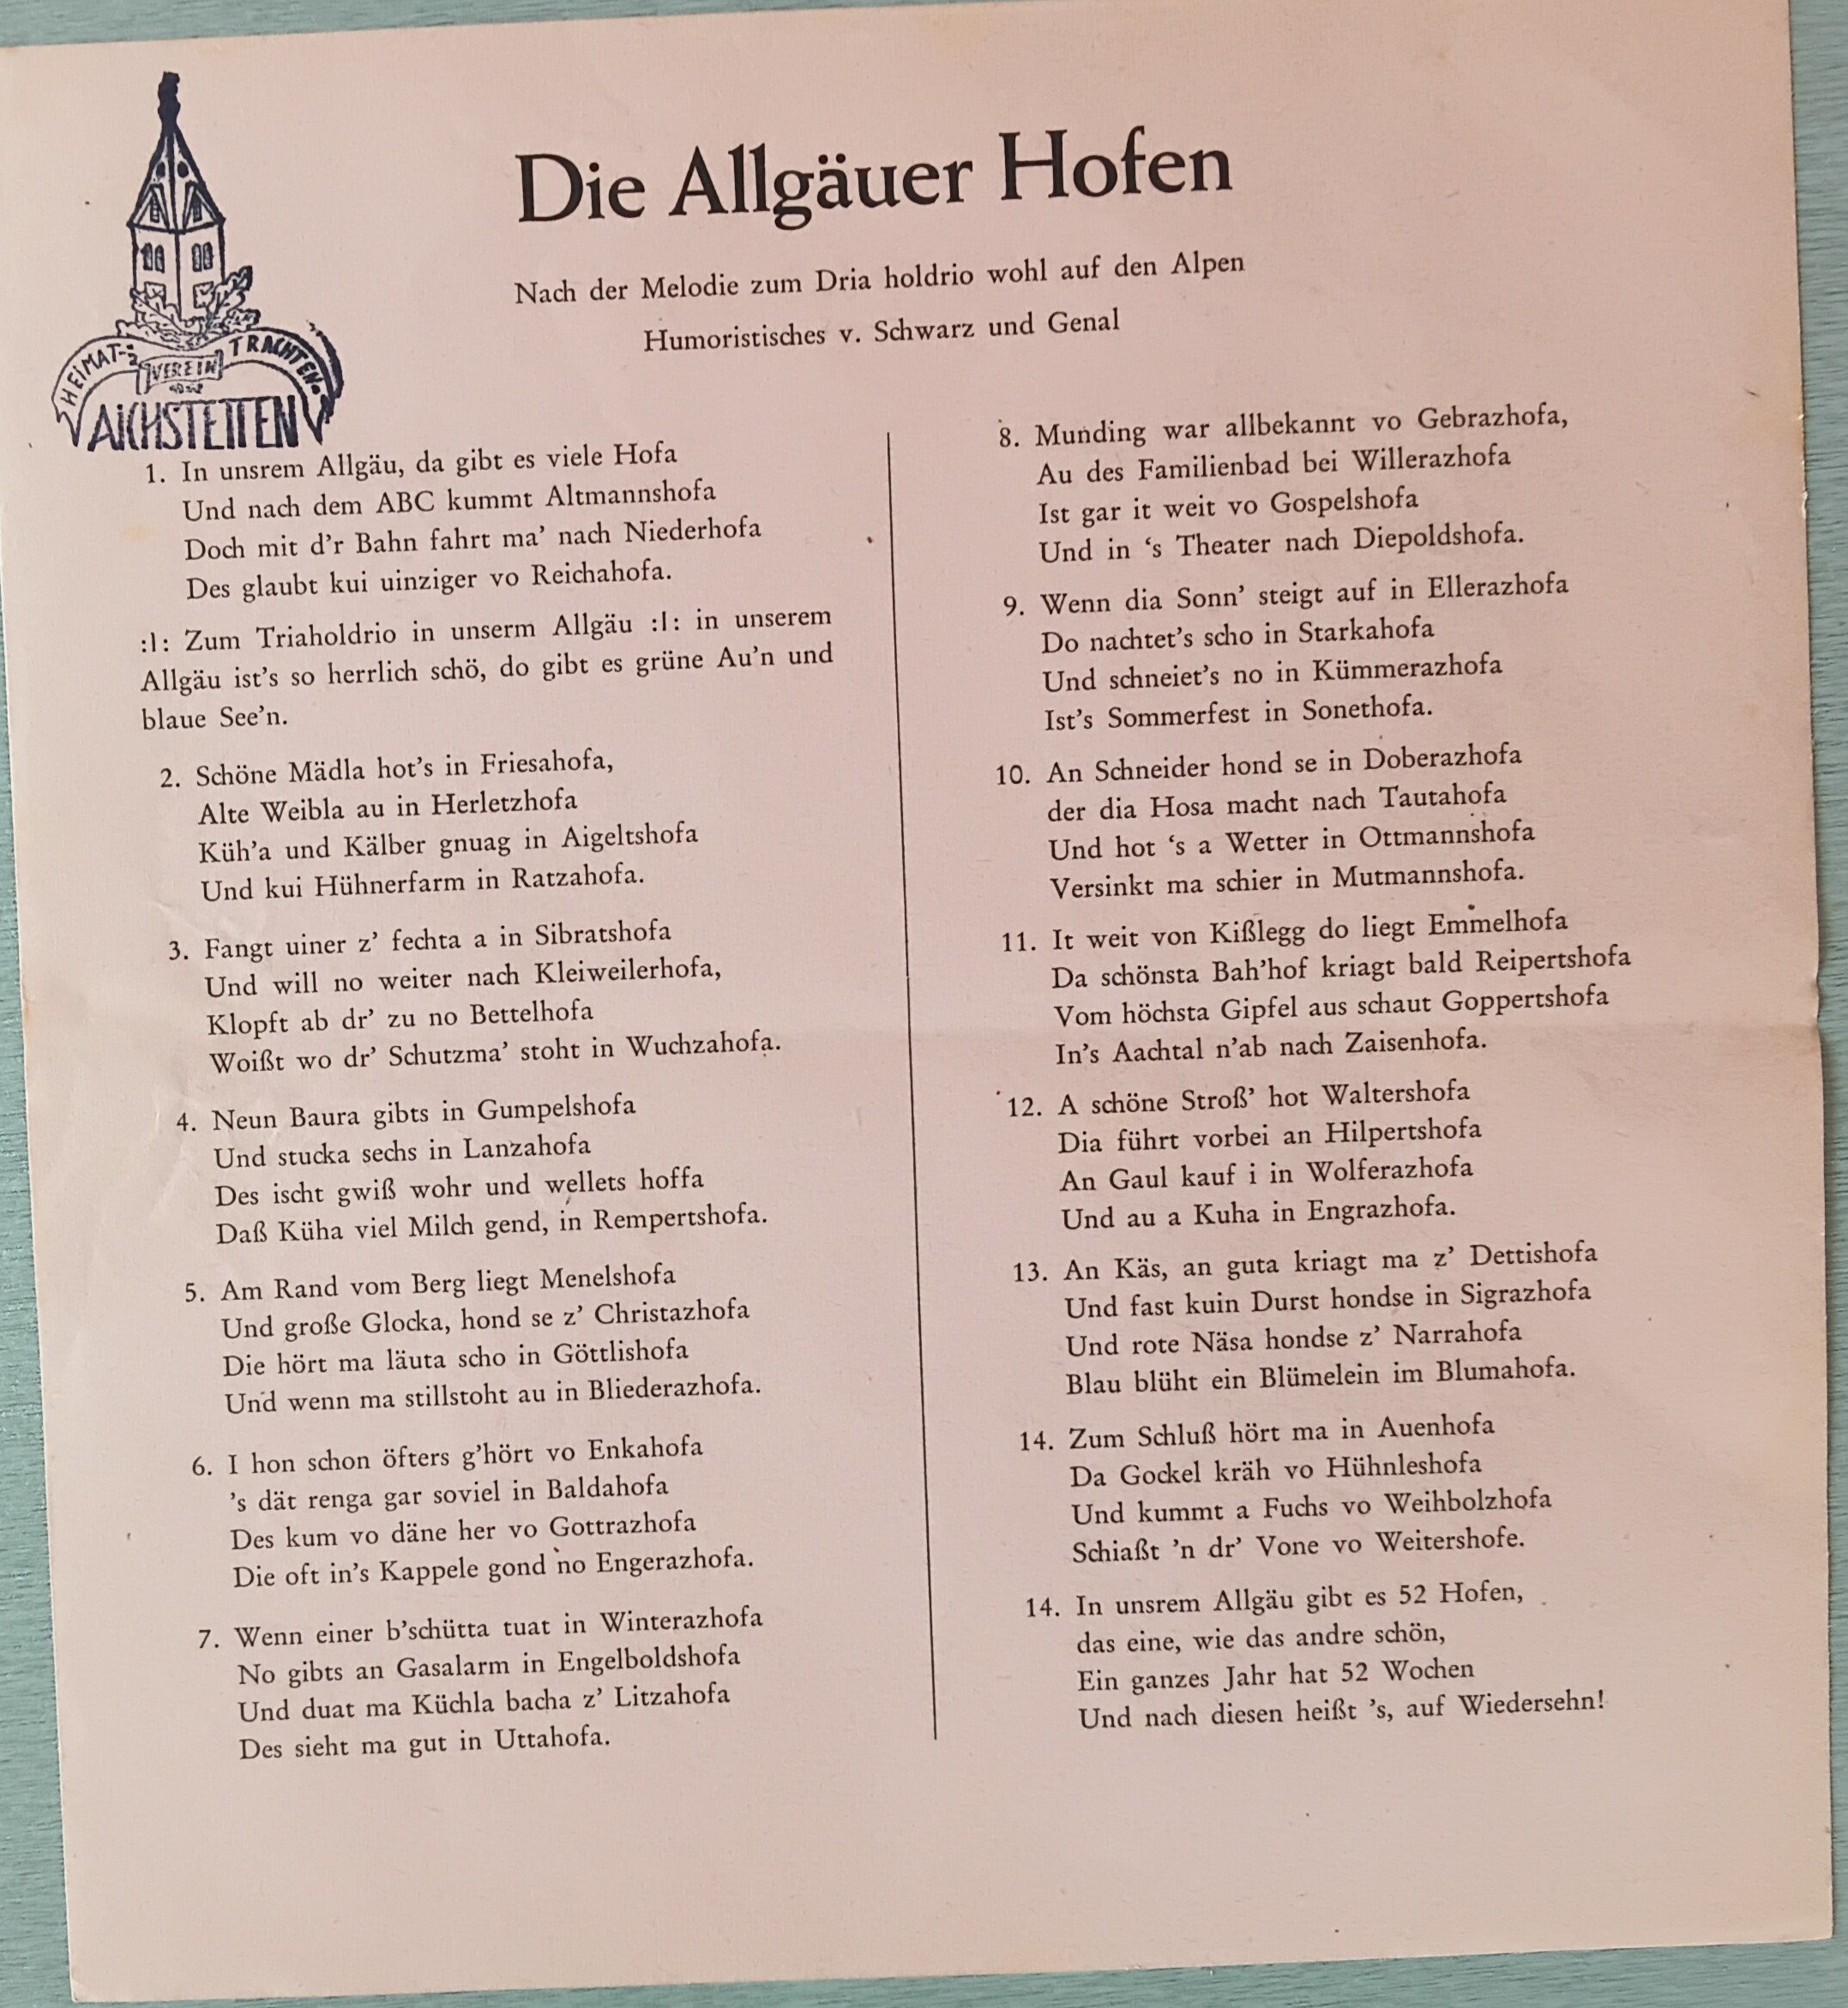 Allgäuer Hofenlied (Heimatmuseum Aichstetten CC BY-NC-SA)